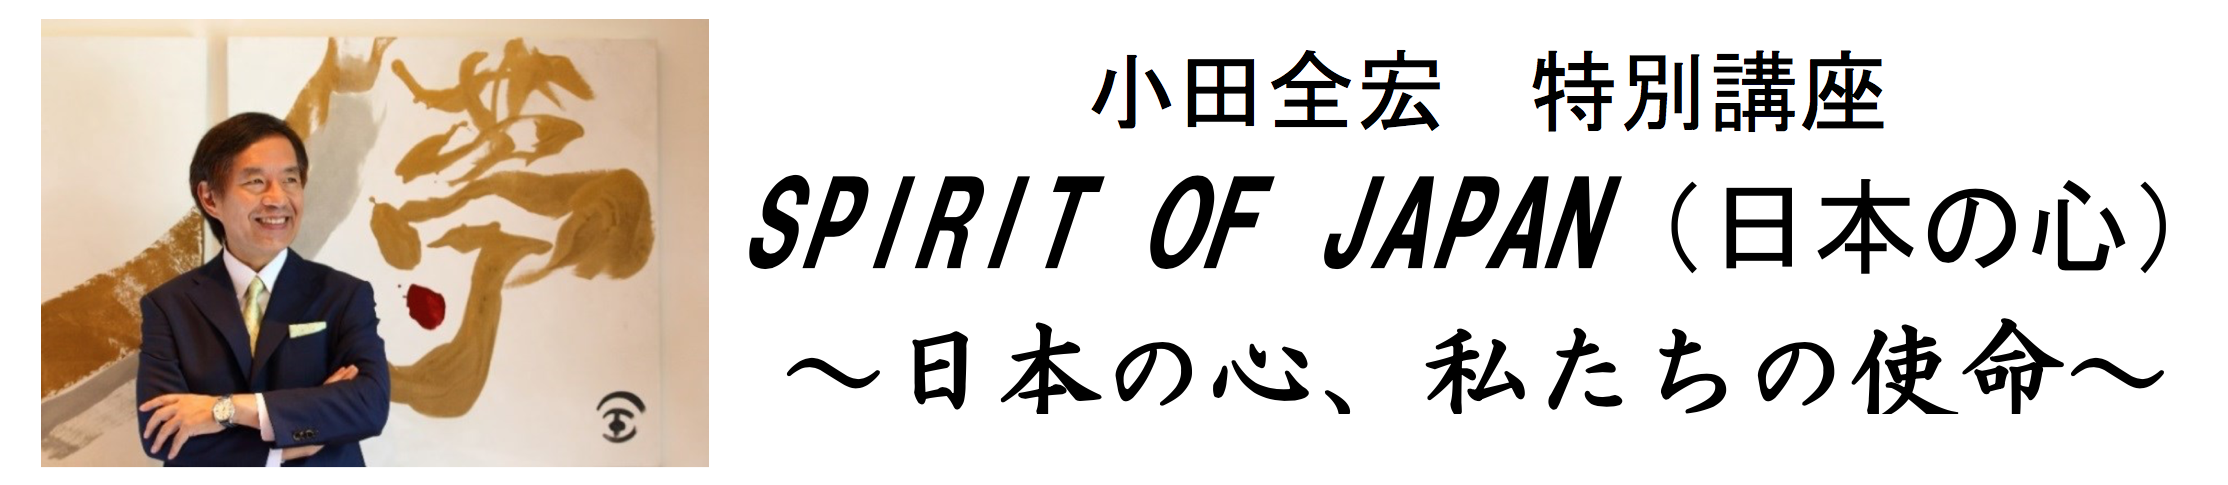 小田全宏 特別講座「SPIRIT OF JAPAN」